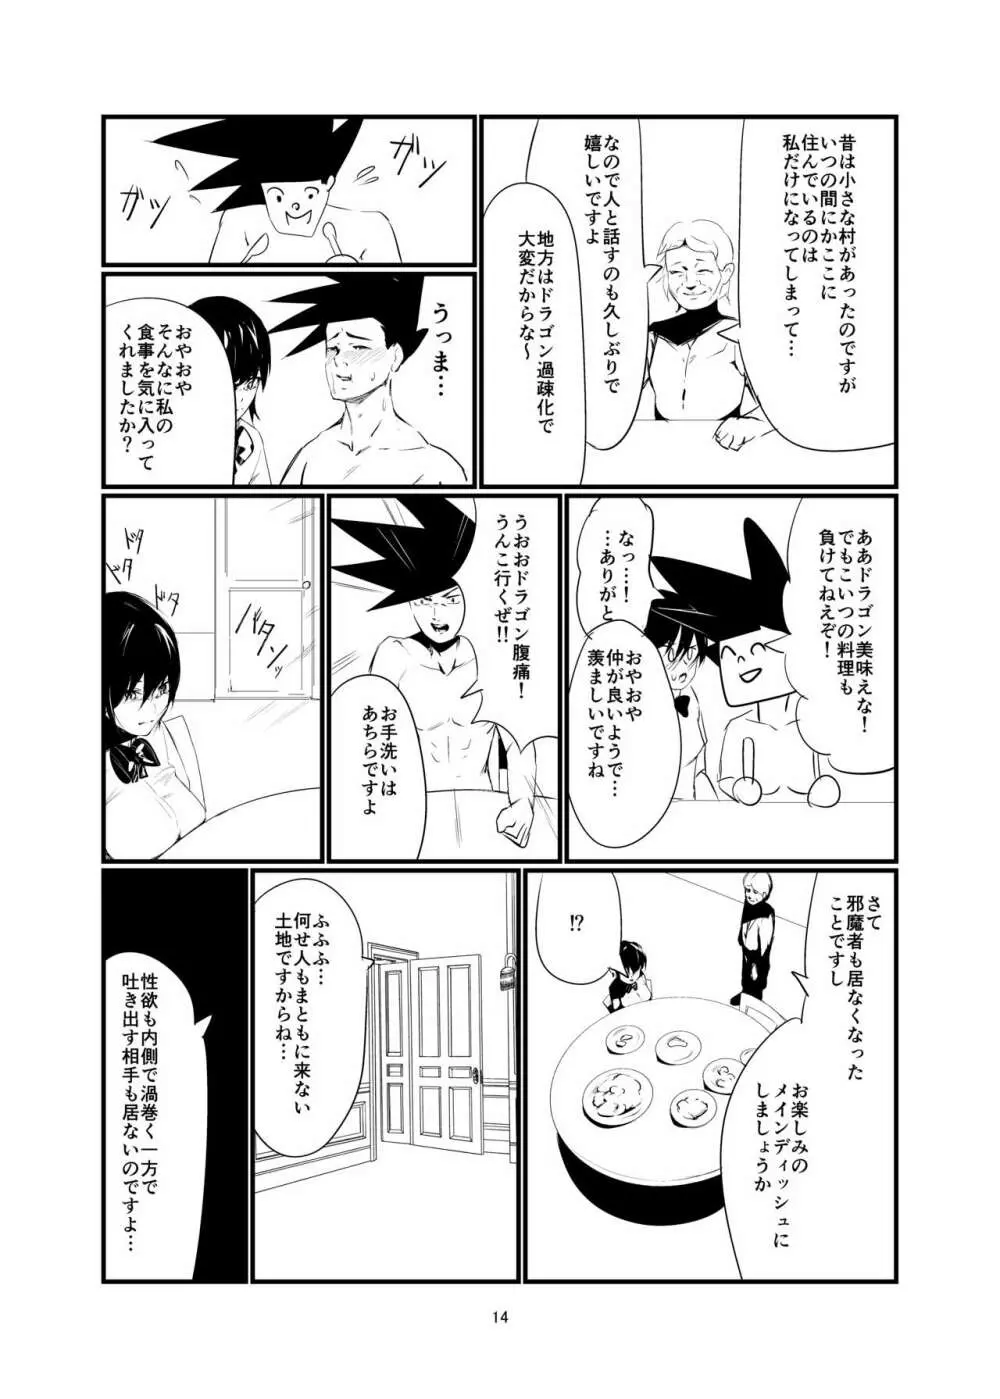 奇想天外エロ同人ブック vol.1 13ページ